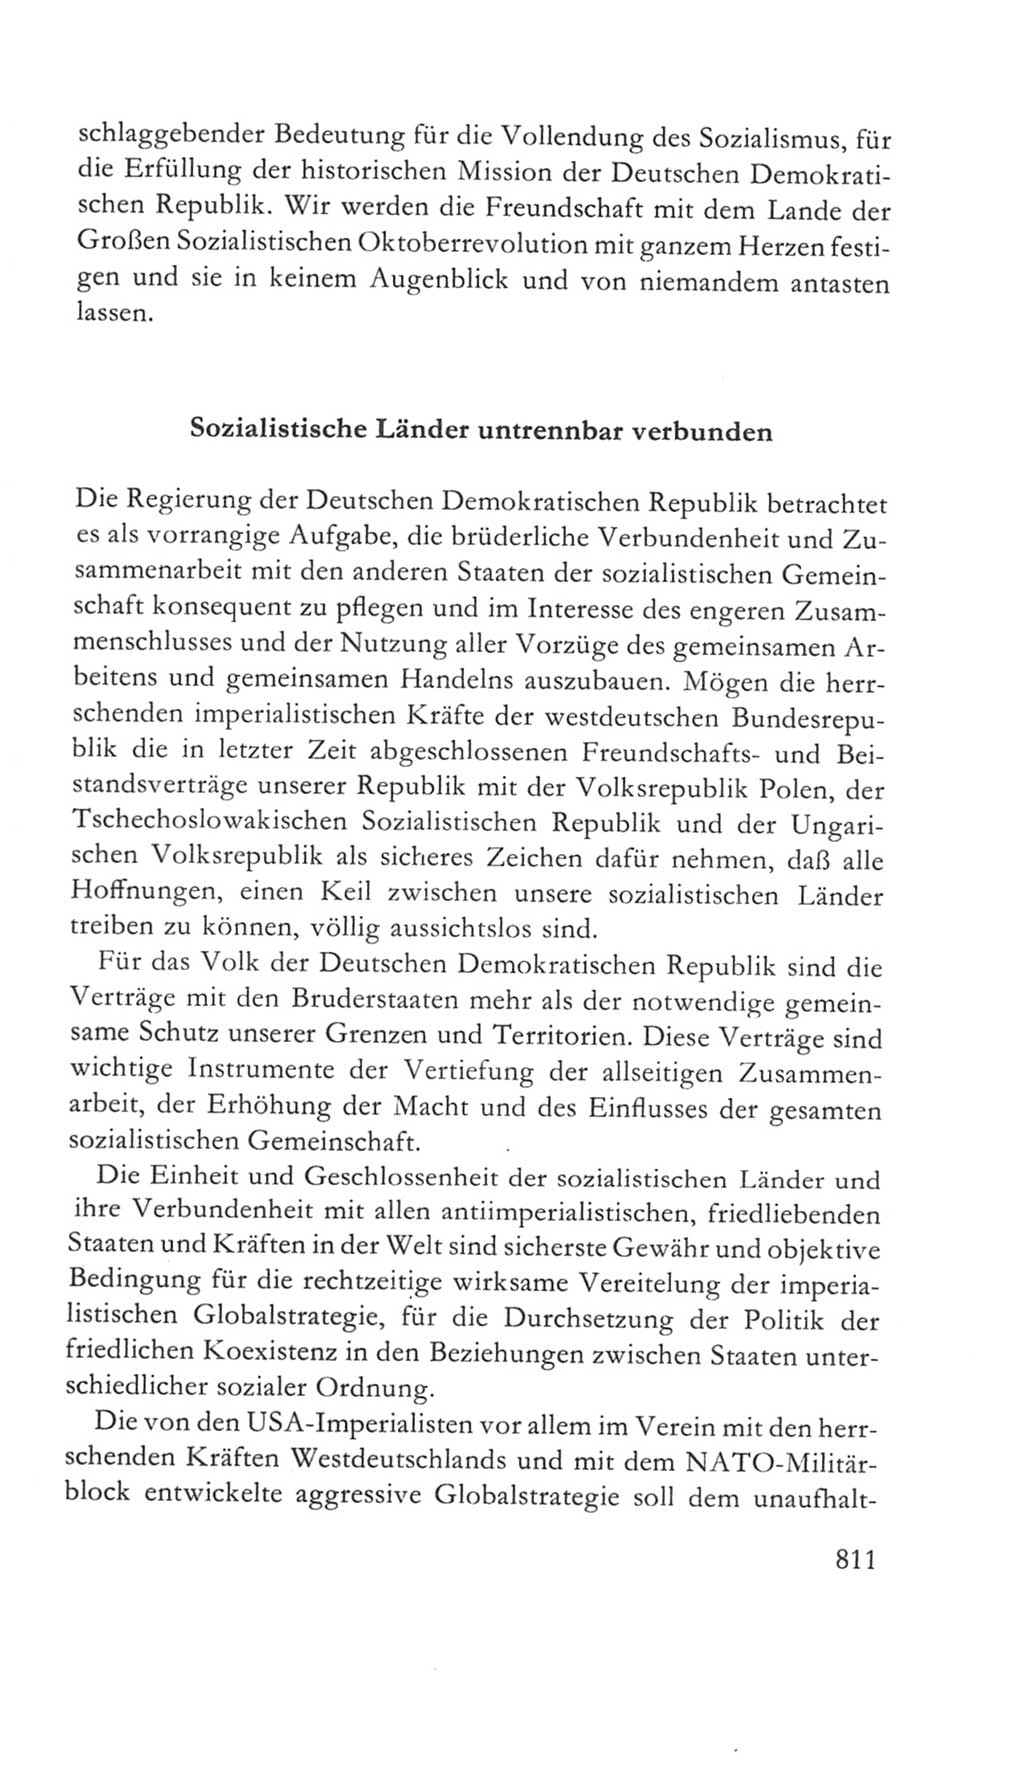 Volkskammer (VK) der Deutschen Demokratischen Republik (DDR) 5. Wahlperiode 1967-1971, Seite 811 (VK. DDR 5. WP. 1967-1971, S. 811)